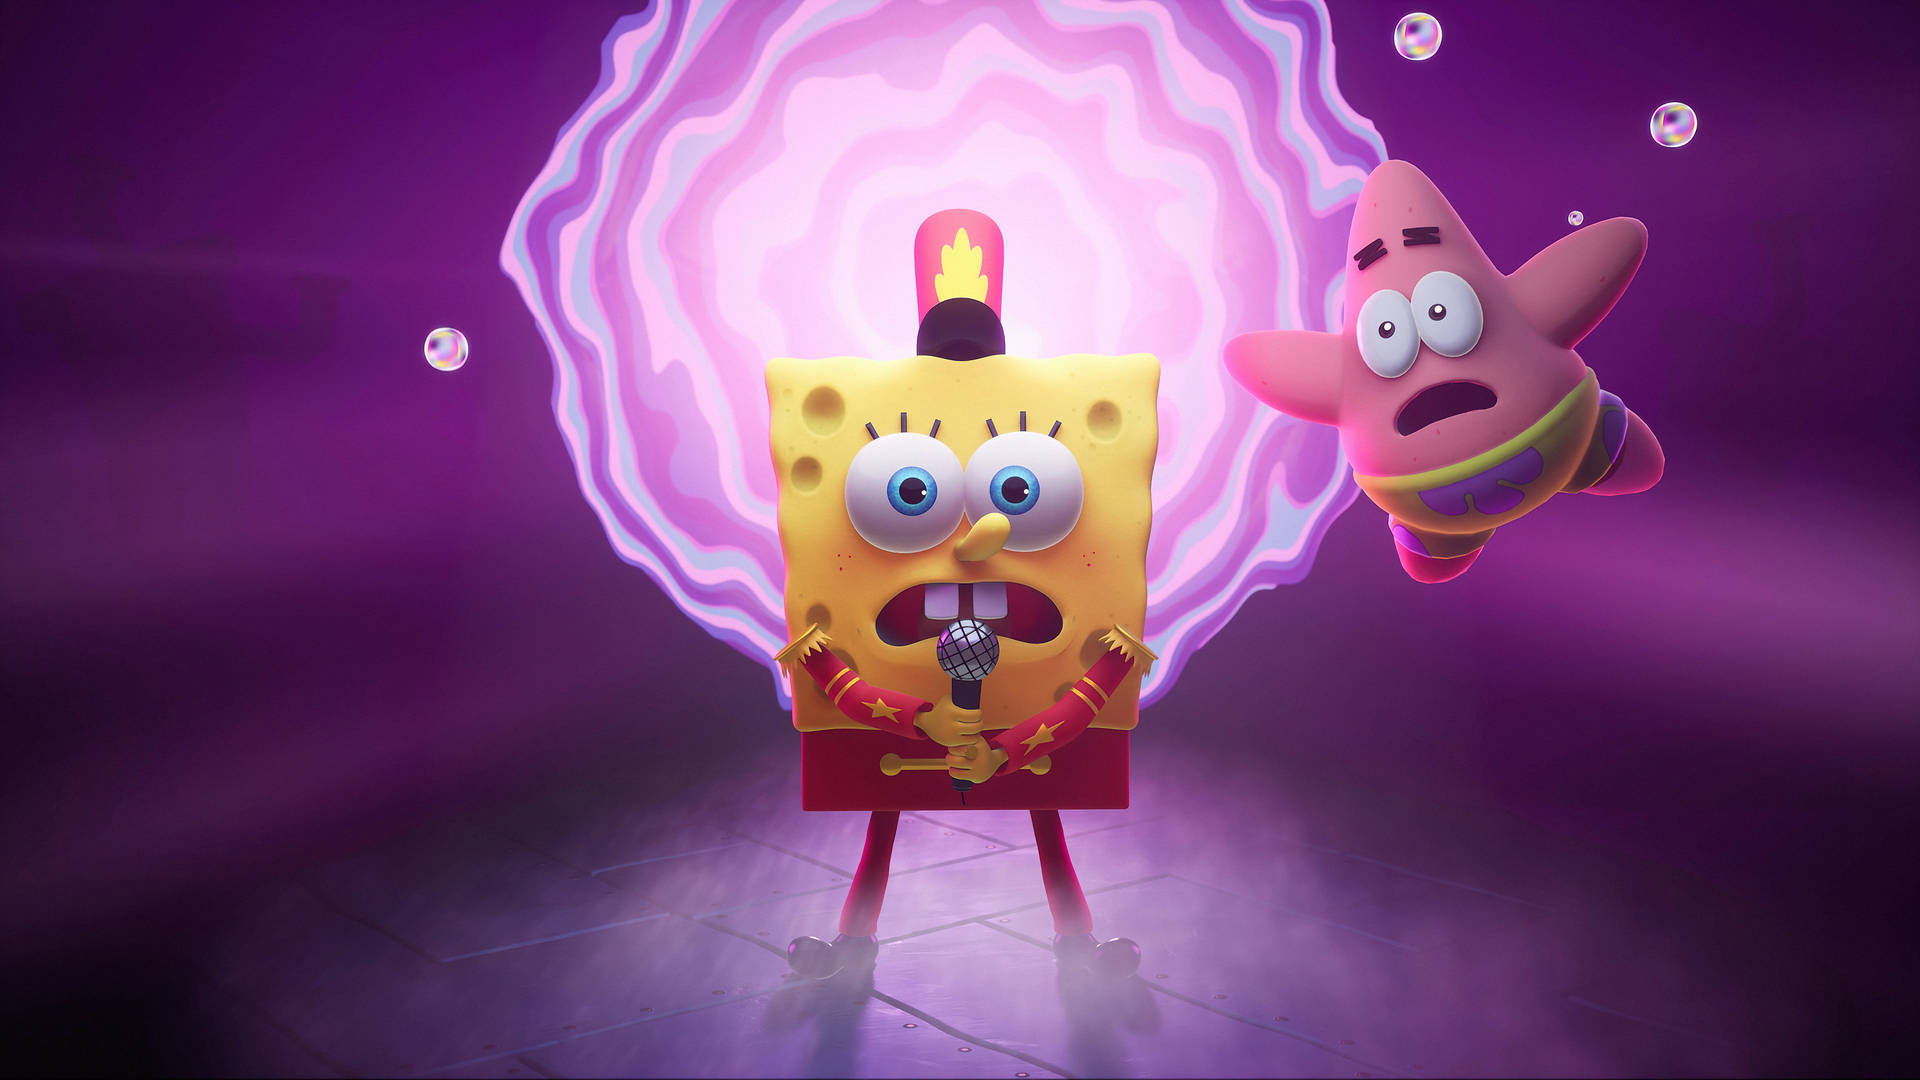 Spongebob Cool Singing Concert Rockstar Background